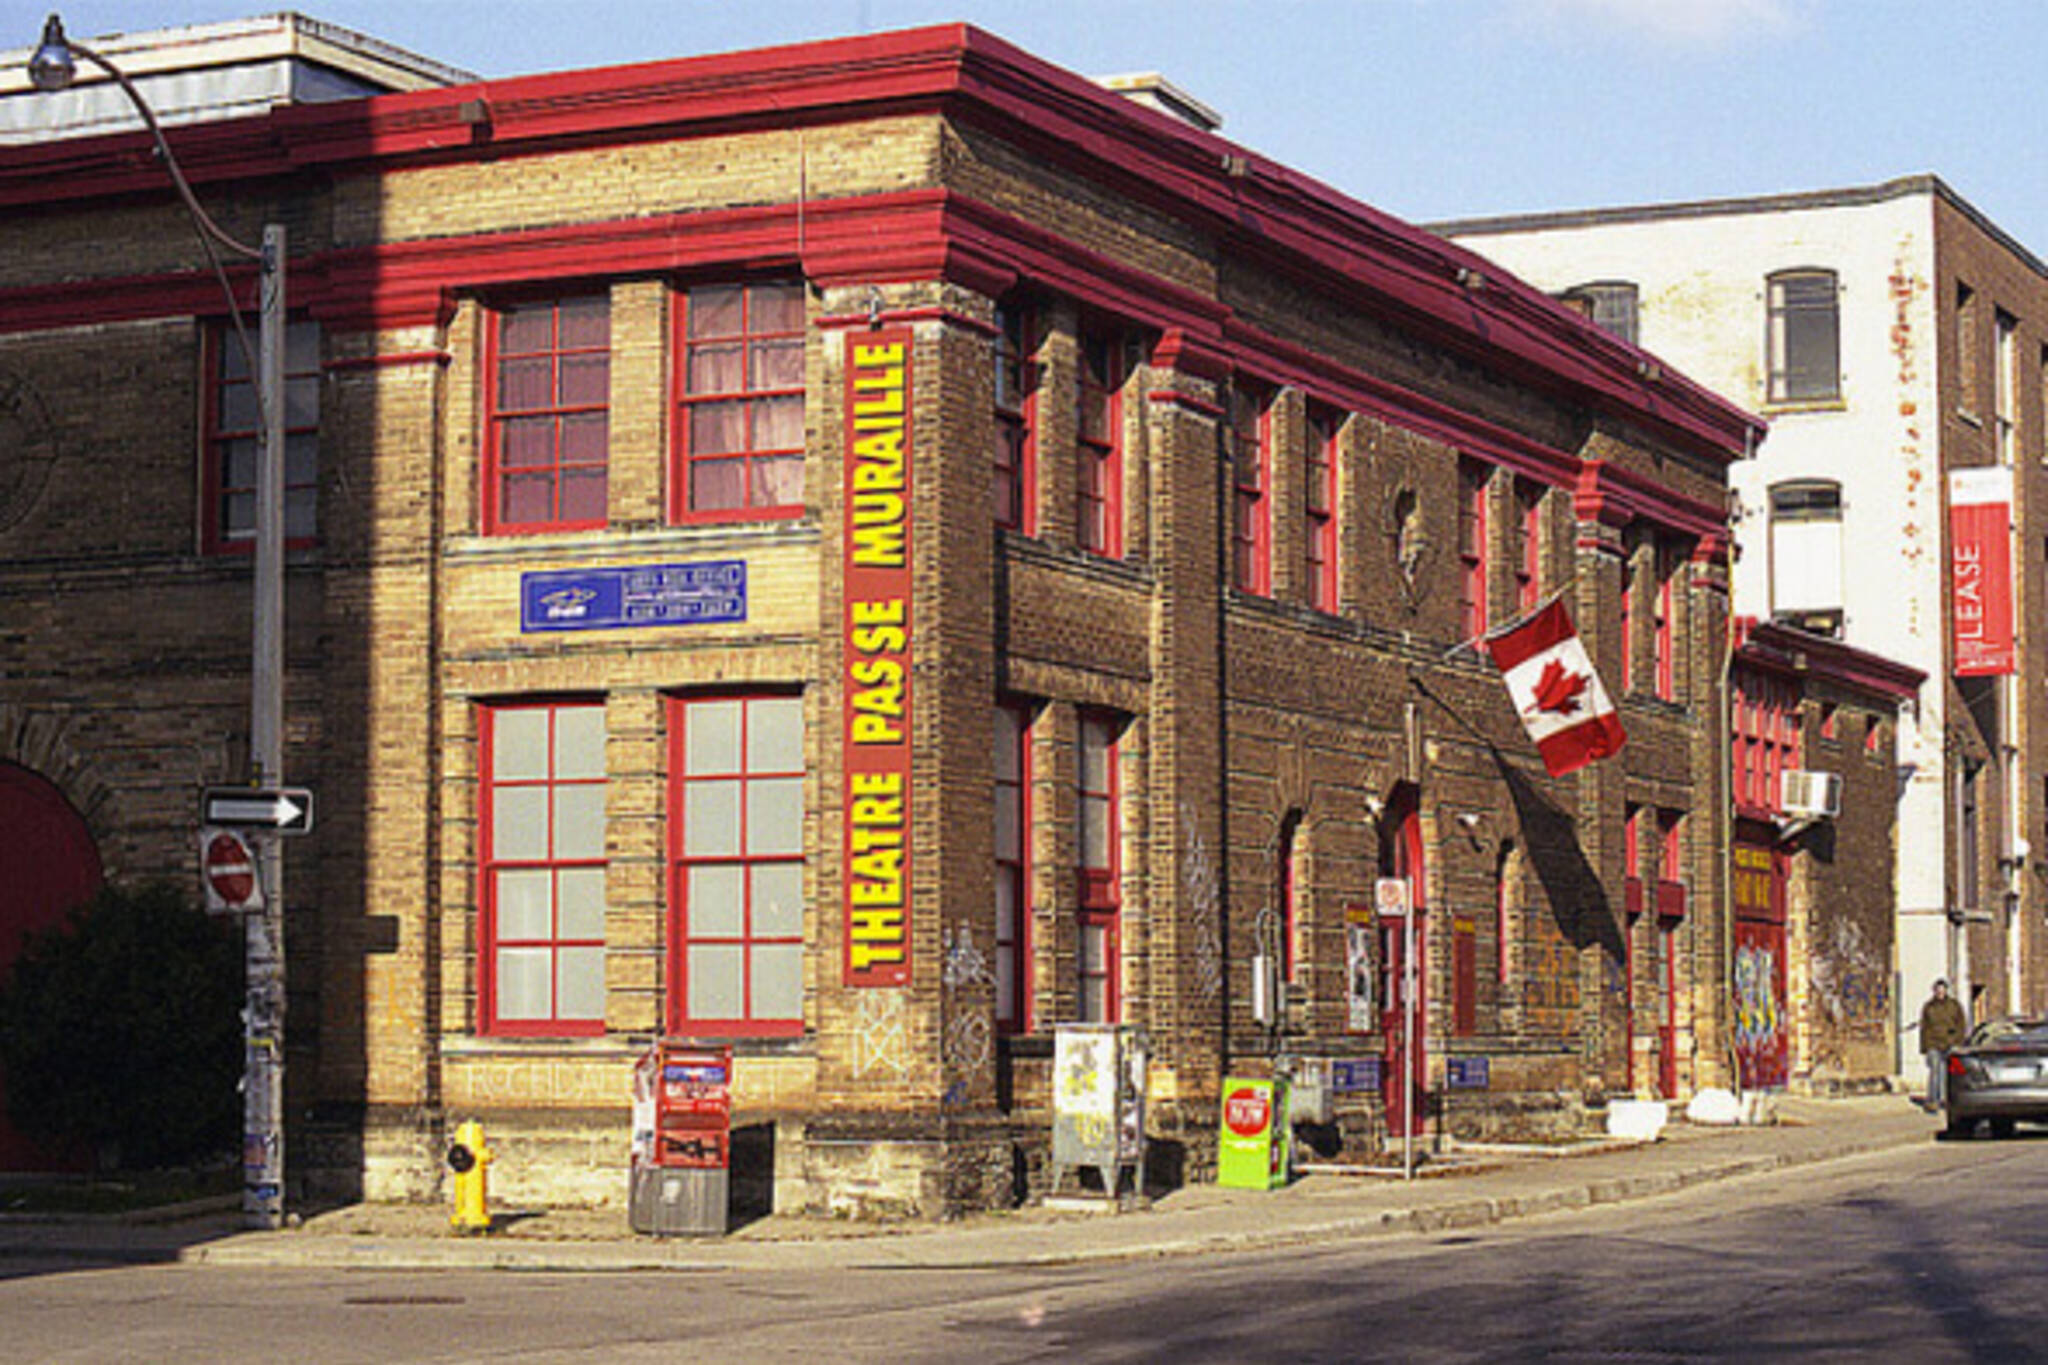 Toronto theatre